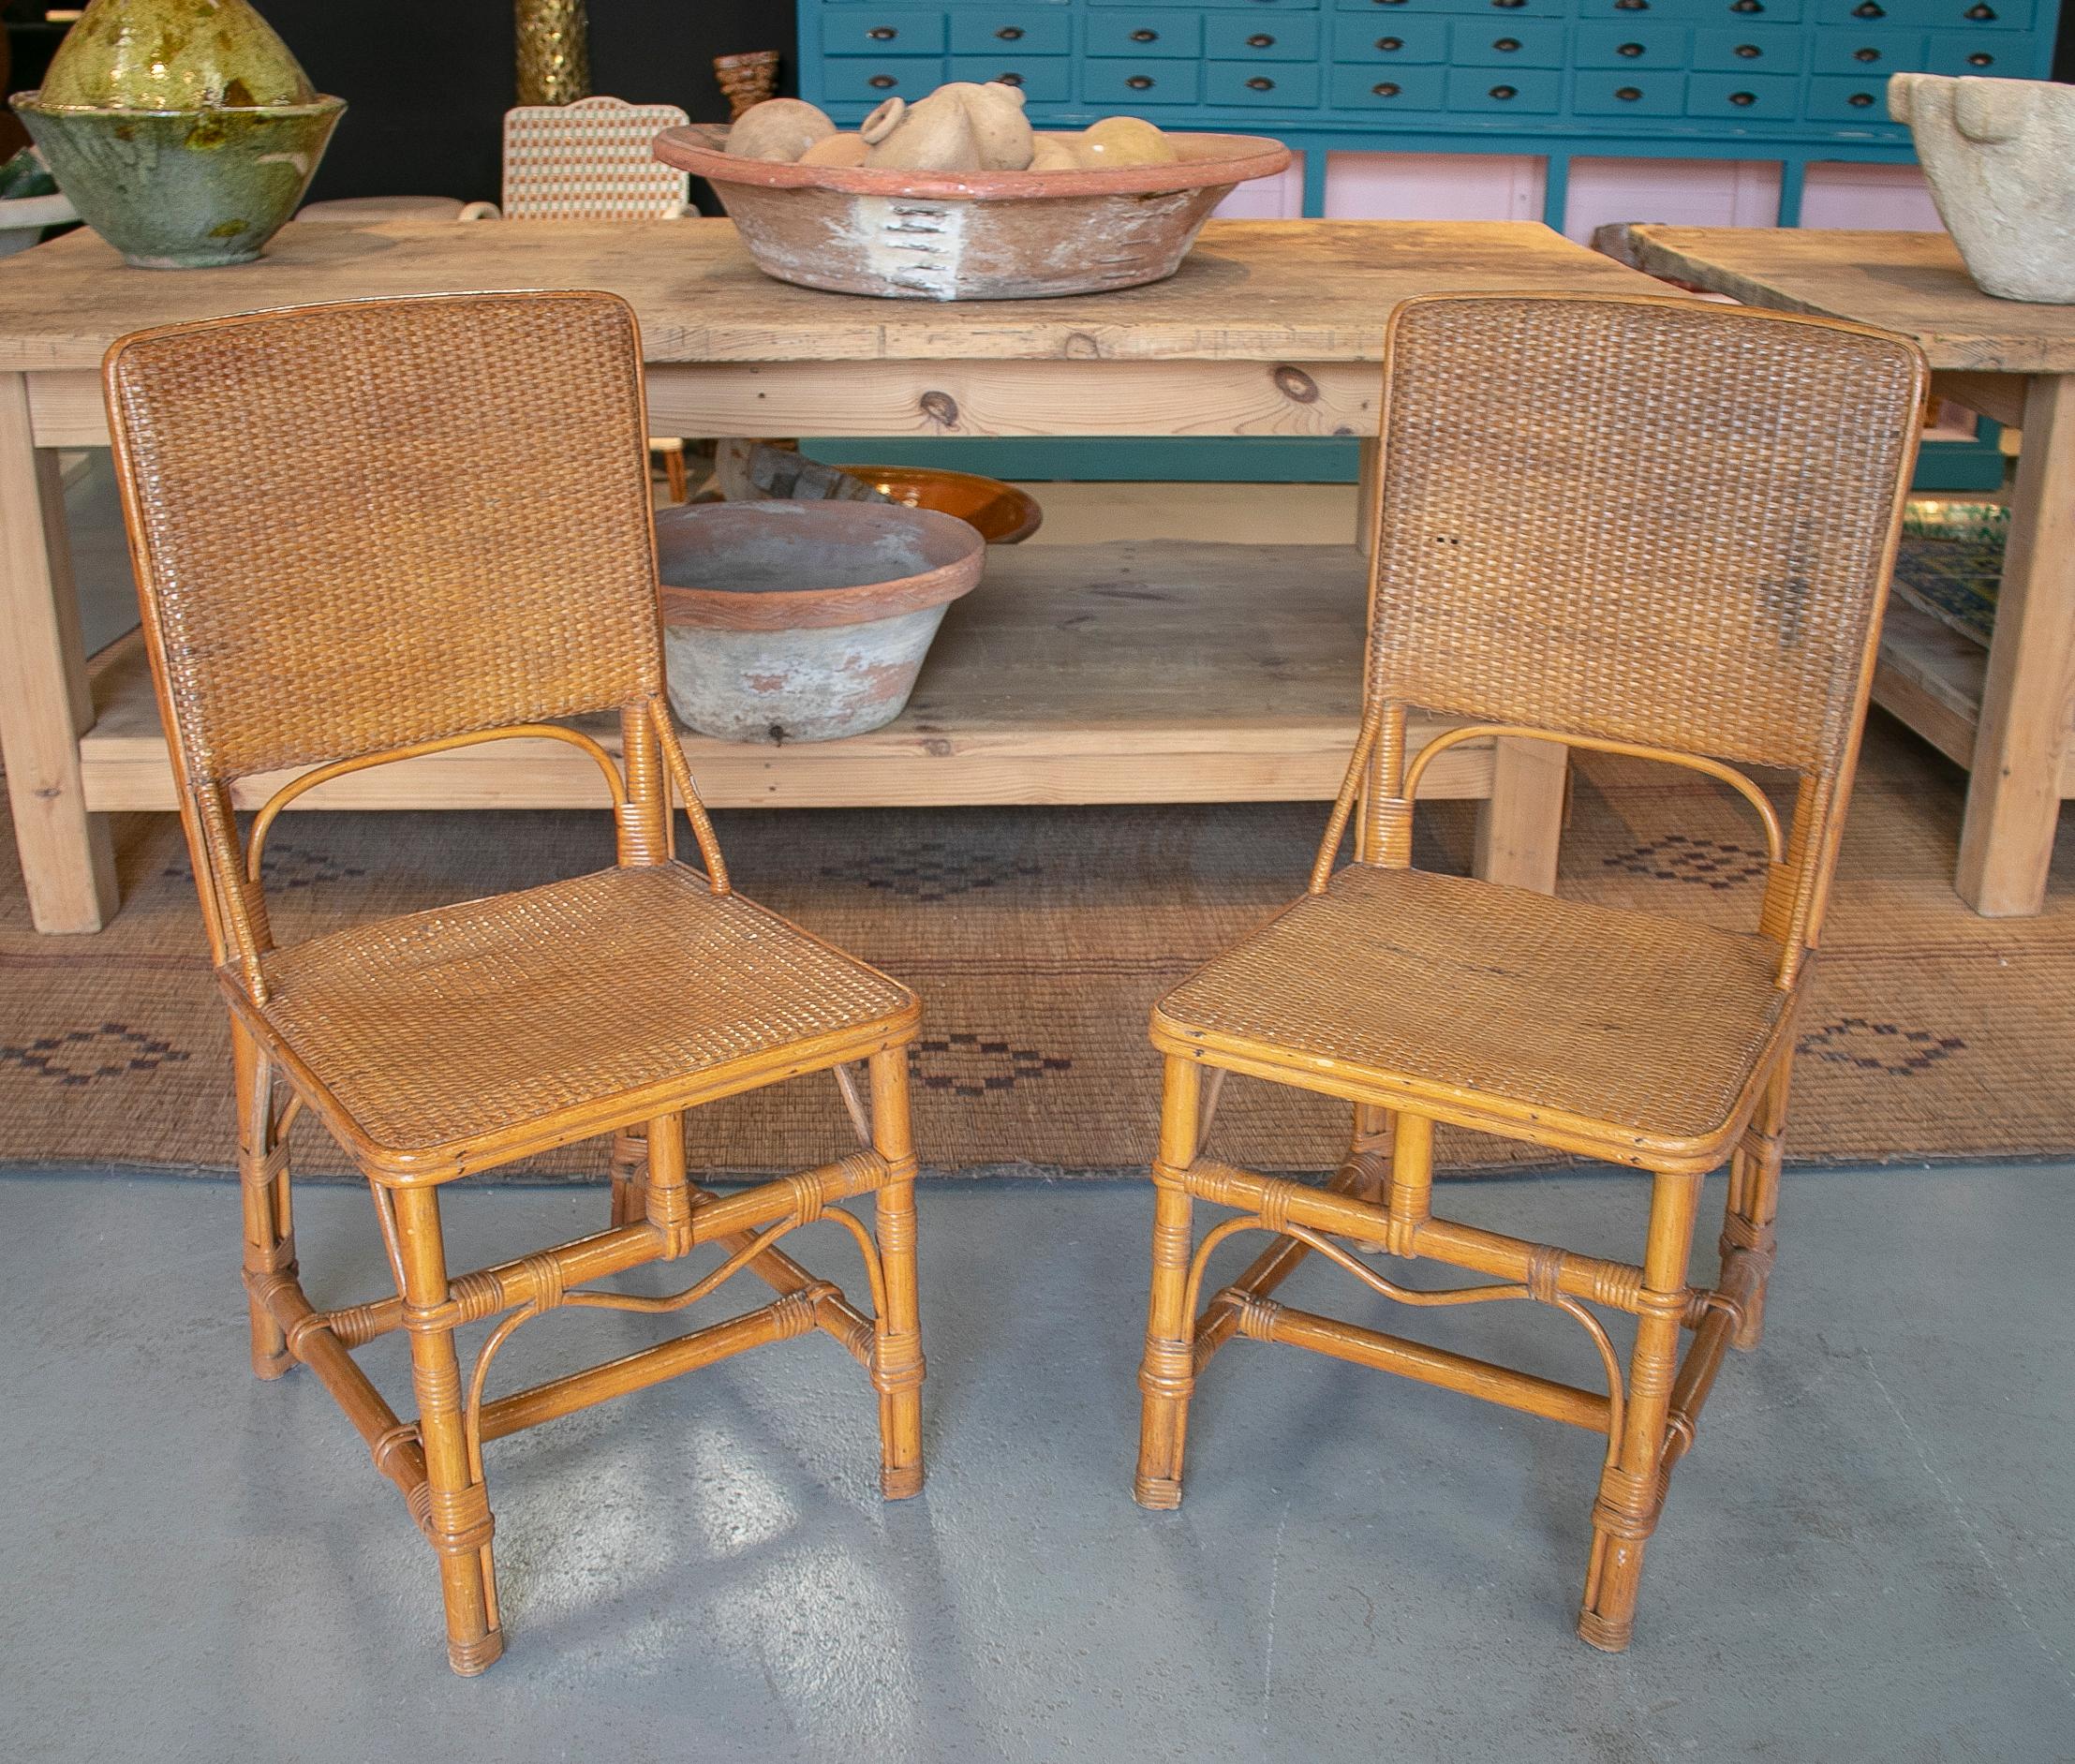 Paire de chaises espagnoles des années 1970 en bambou et osier tressé à la main.